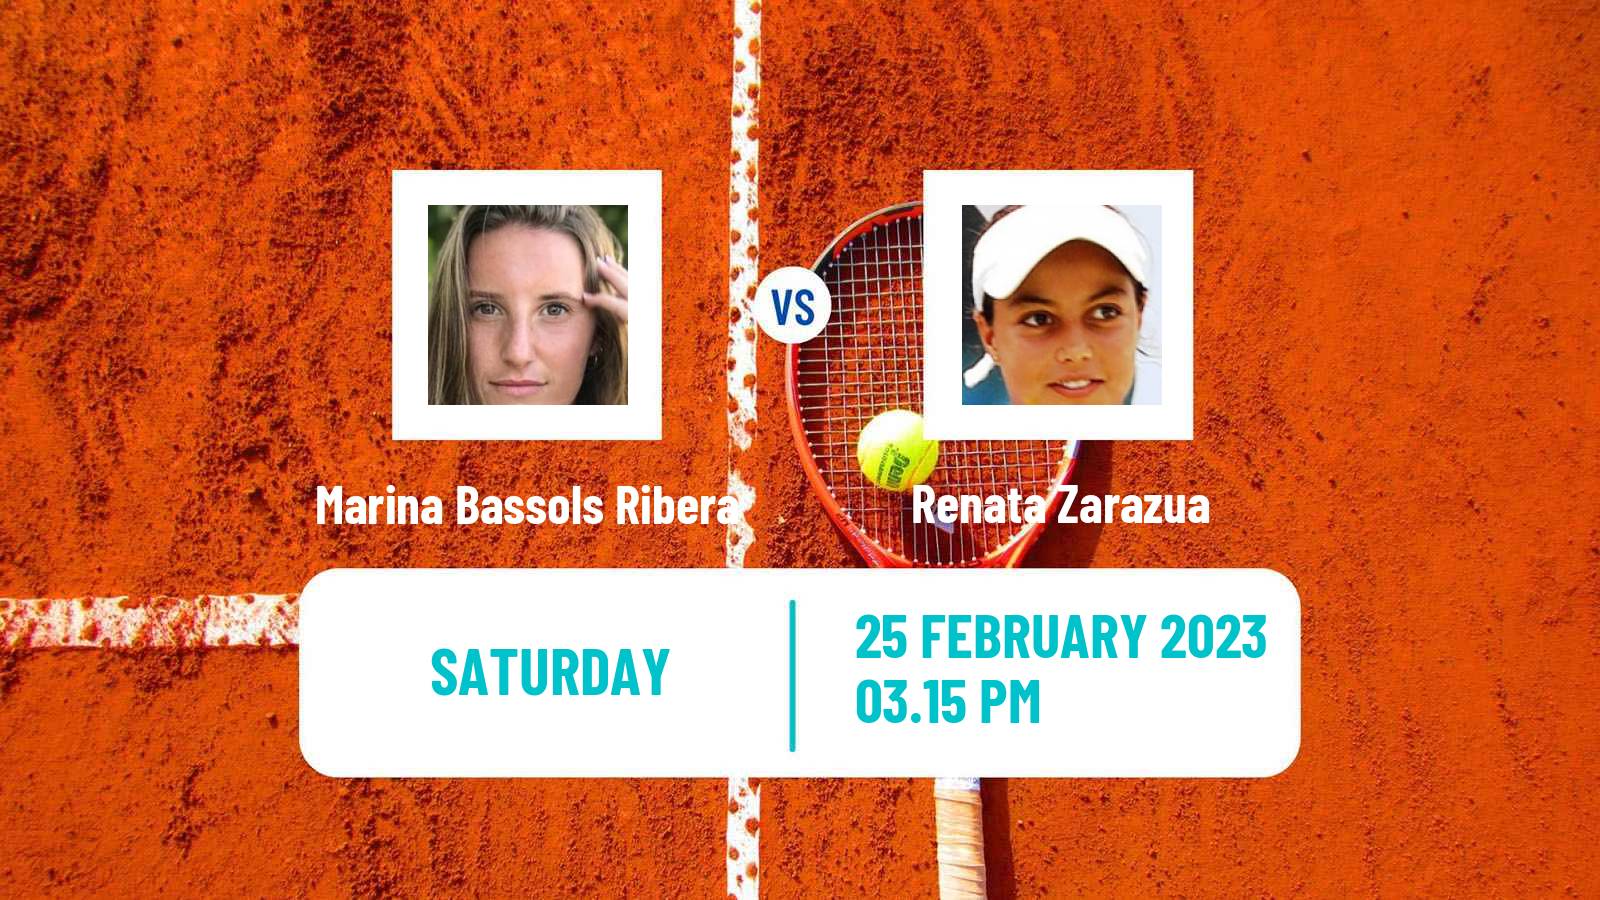 Tennis WTA Monterrey Marina Bassols Ribera - Renata Zarazua